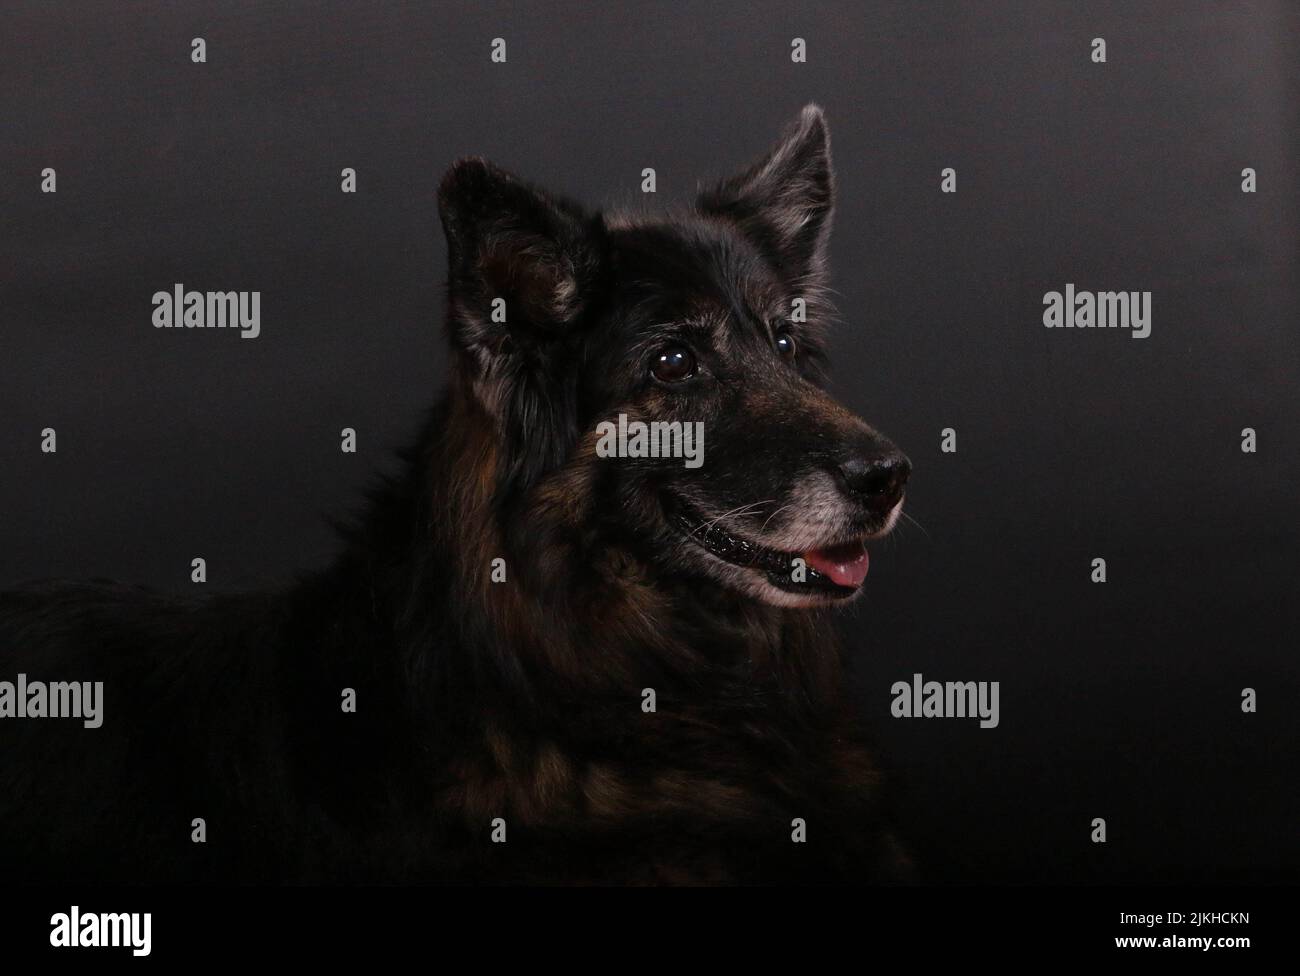 Gros plan d'un chien berger bohème sur fond sombre Banque D'Images